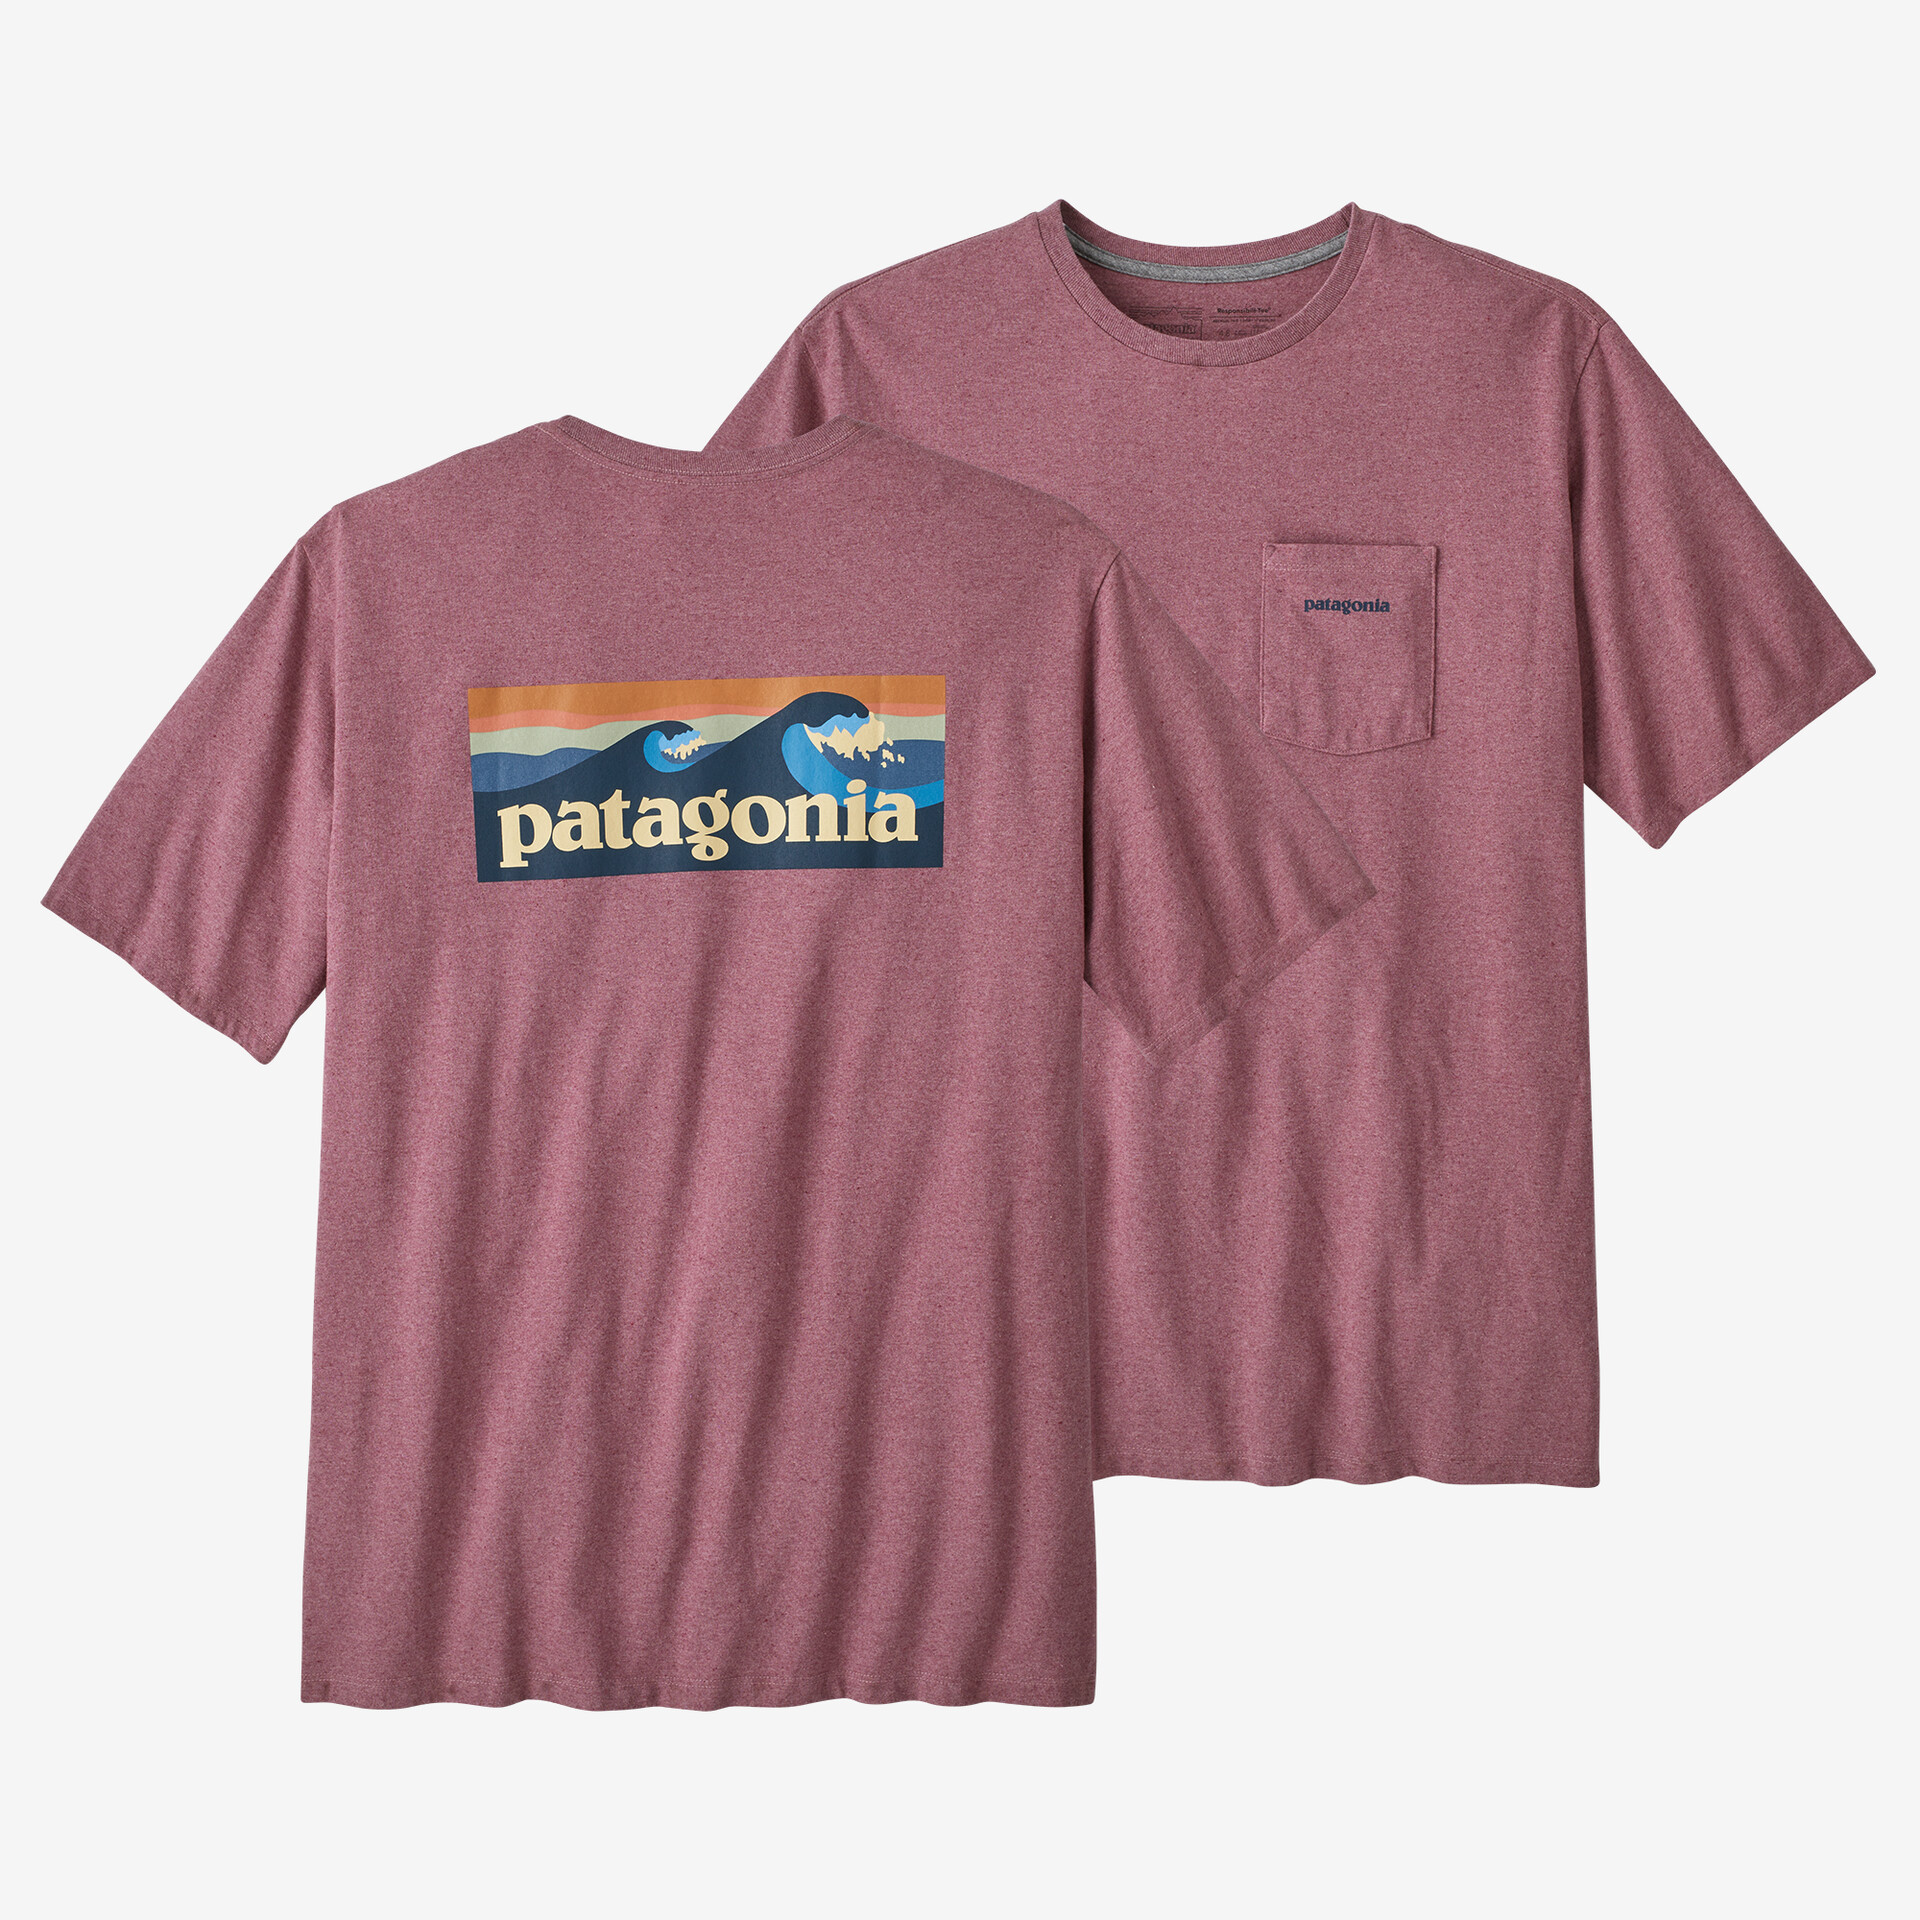 Мужская футболка с логотипом и карманом Responsibili Patagonia, цвет Evening Mauve мужская ответственная футболка с логотипом и карманом patagonia черный